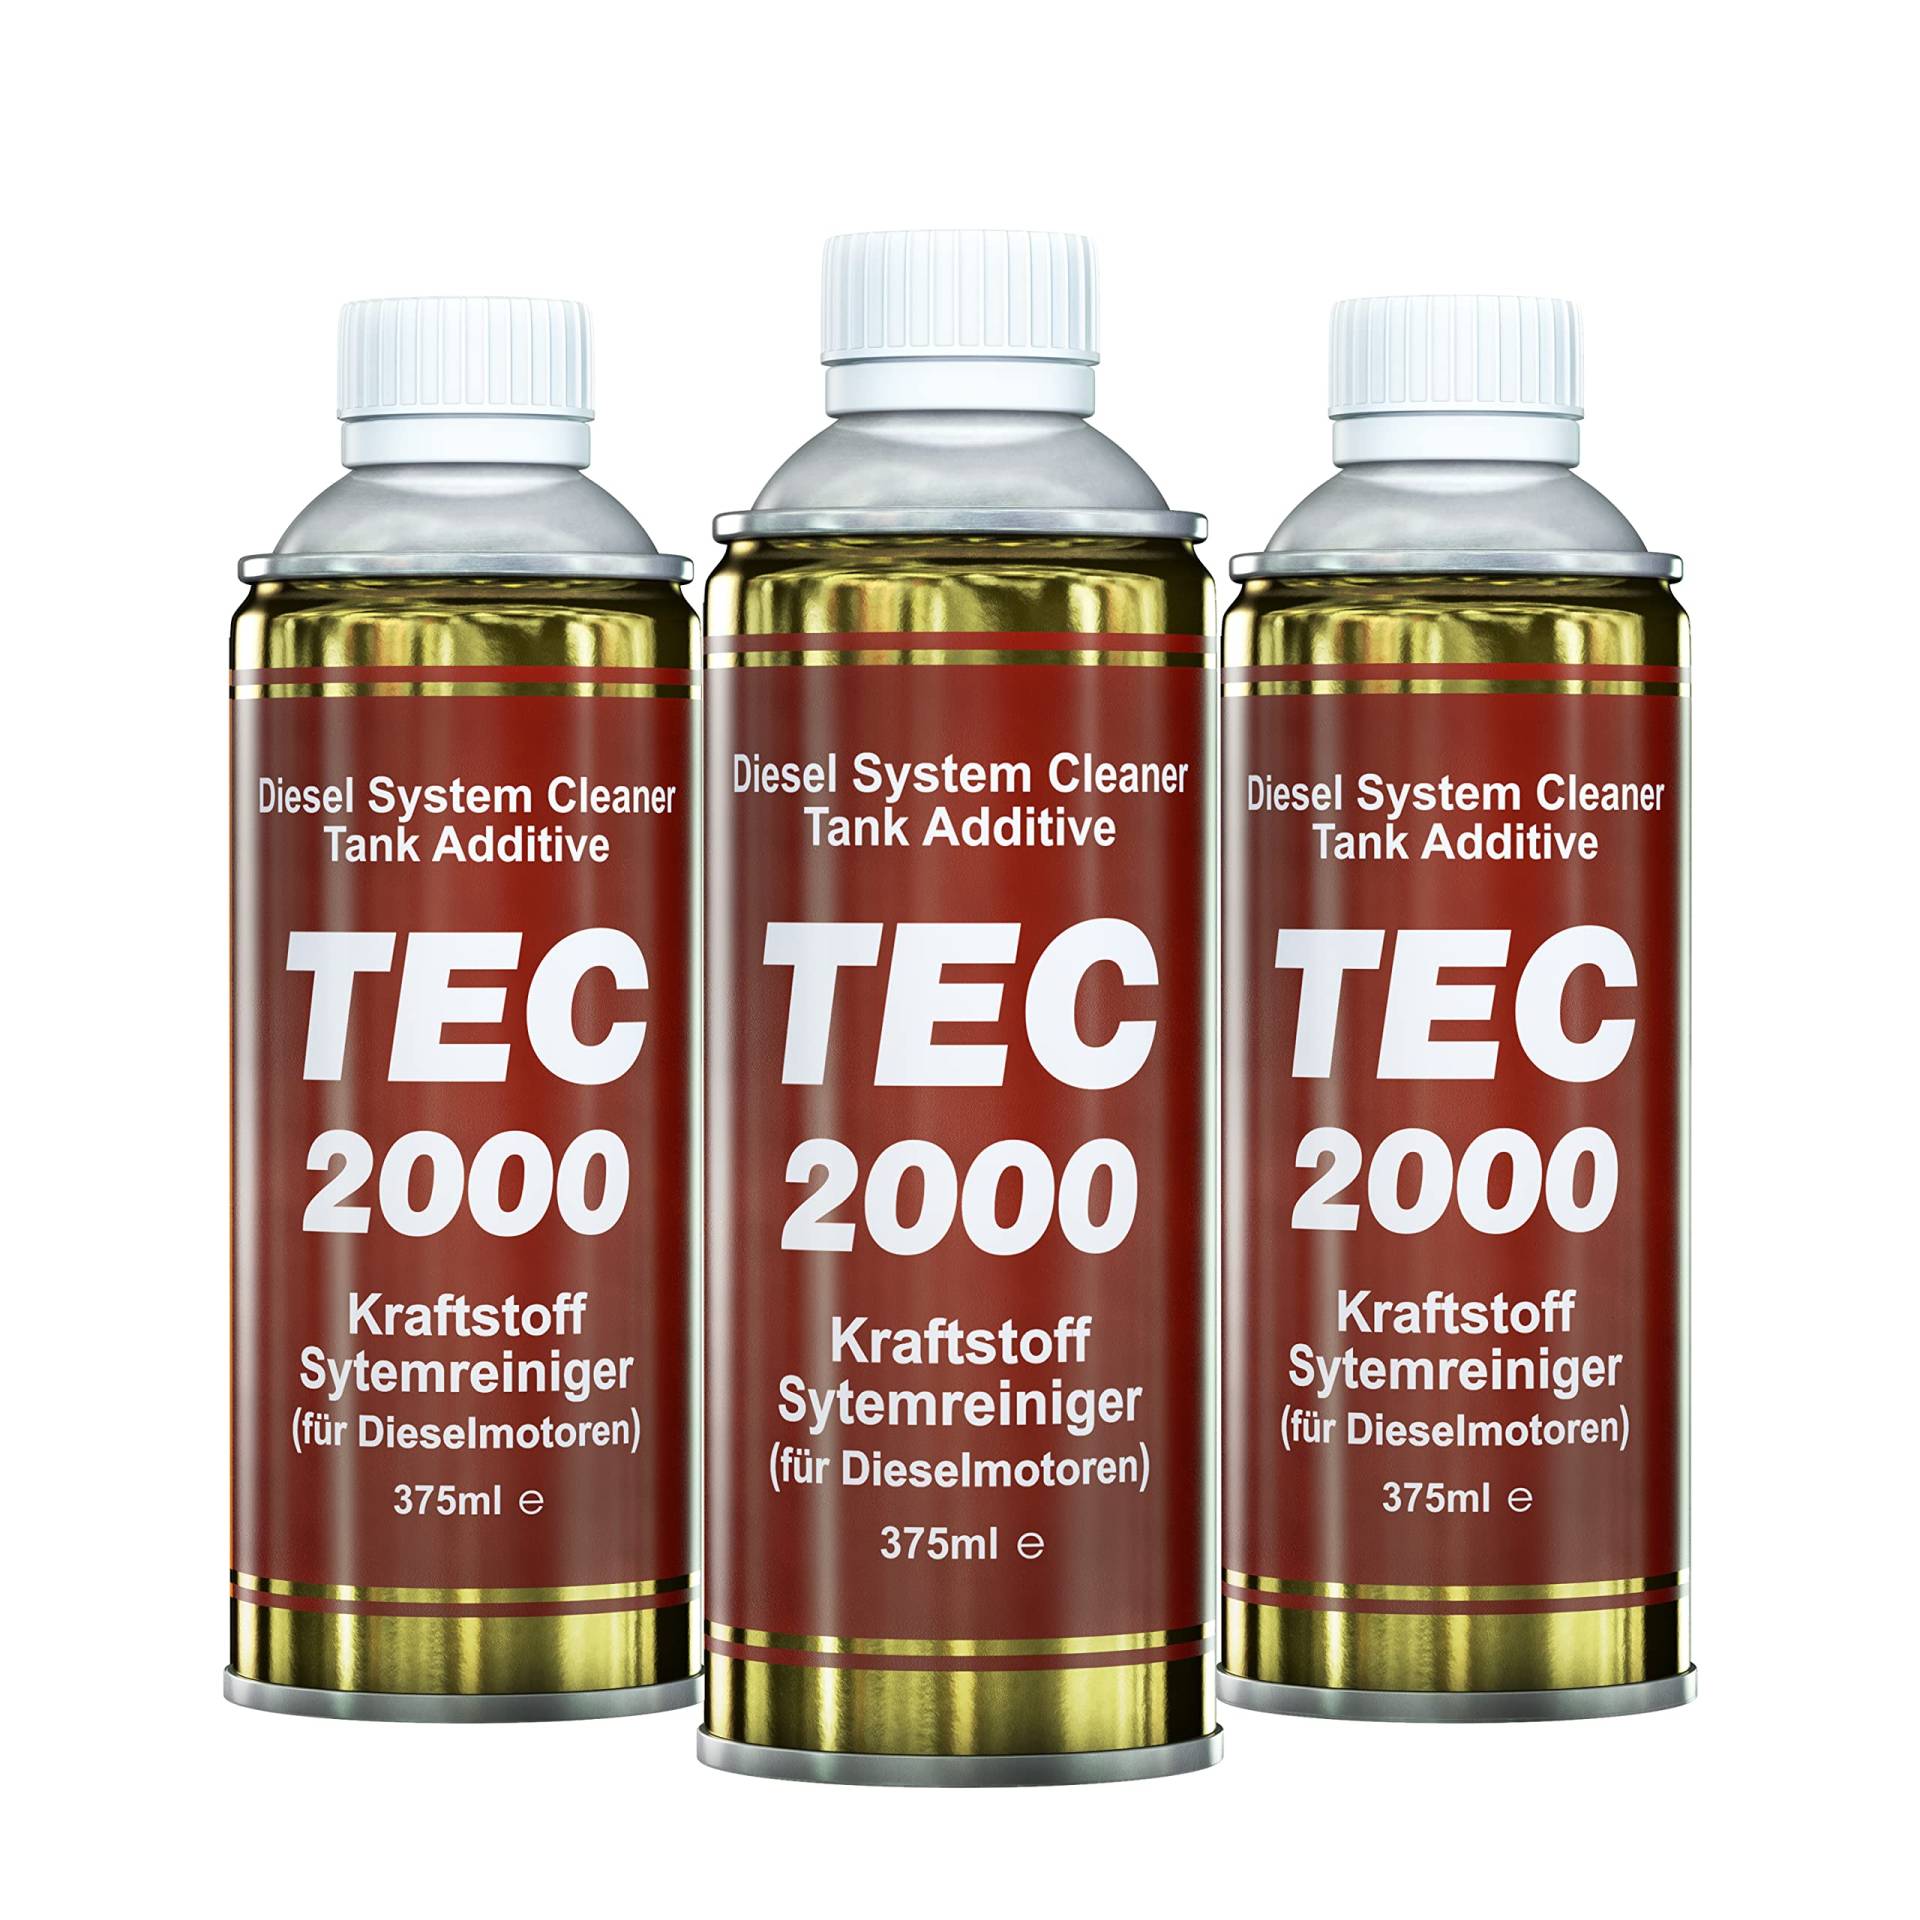 TEC 2000 Motorreiniger - 3 x Diesel System Cleaner Tank Additiv 375ml - Kraftstoff Systemreiniger Diesel Zusatz - Reduzierung der Abgasemissionen - Dieselreiniger von TEC 2000